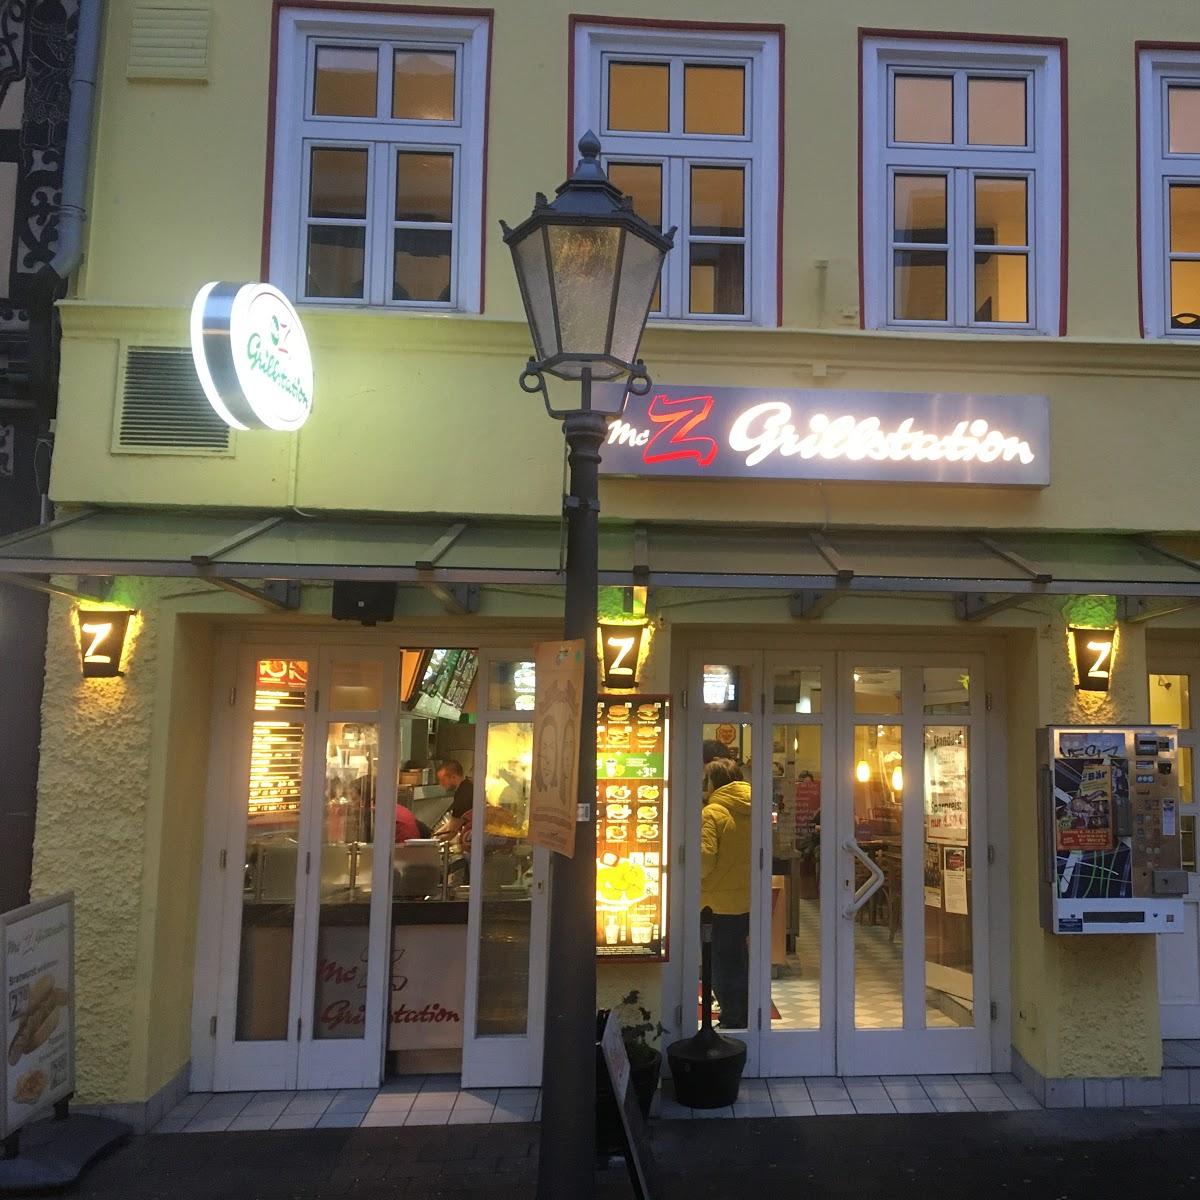 Restaurant "Mc Z Grillstation" in Eschwege